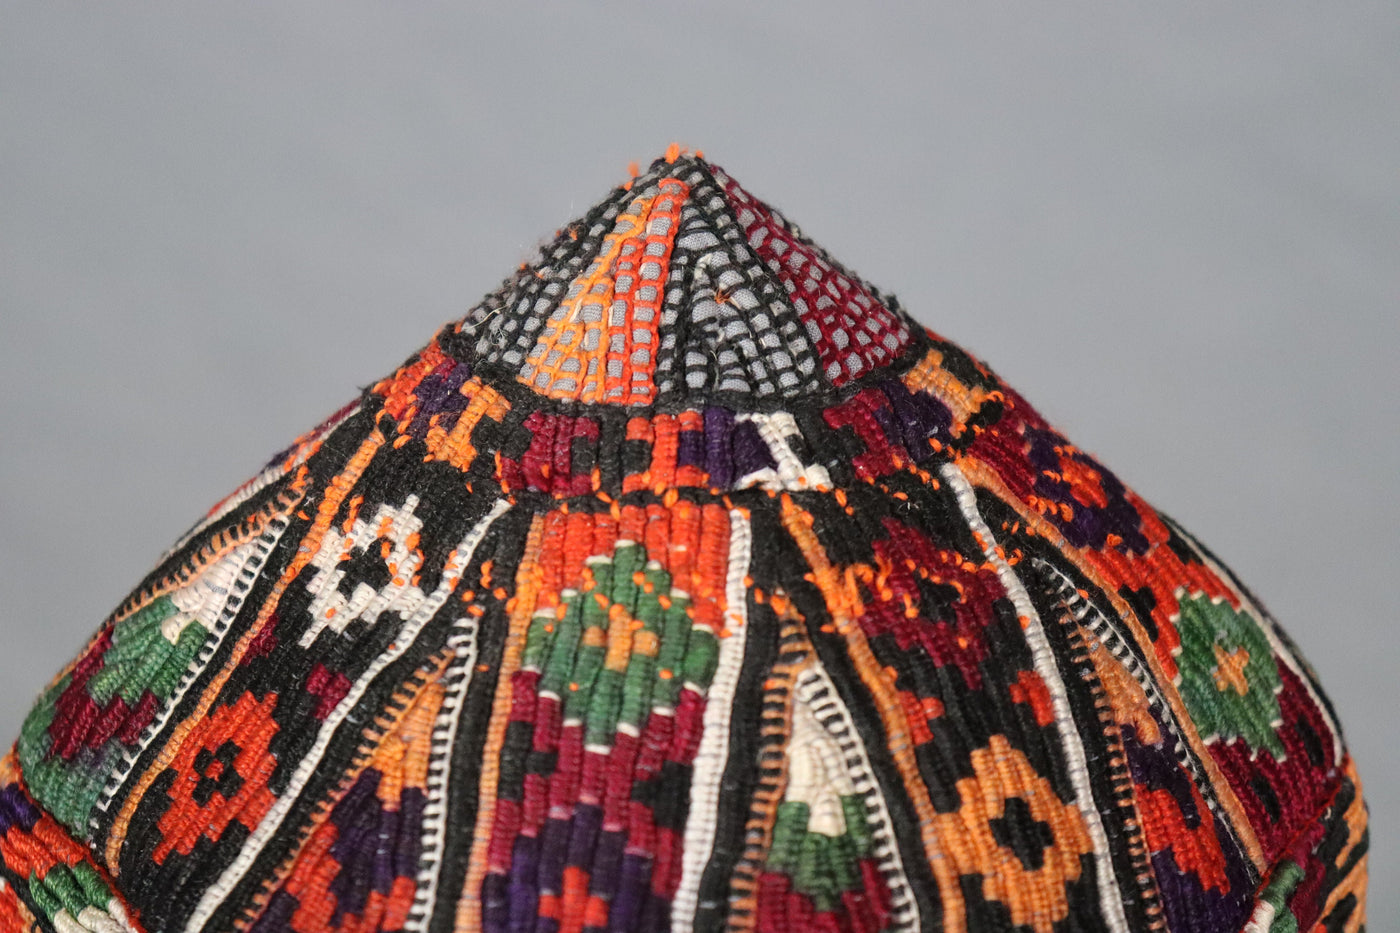 antik und sehr seltener nomaden usbekische  Kinder Hut Mütze mit Stickerei  aus Afghanistan  Nr:22/10  Orientsbazar   